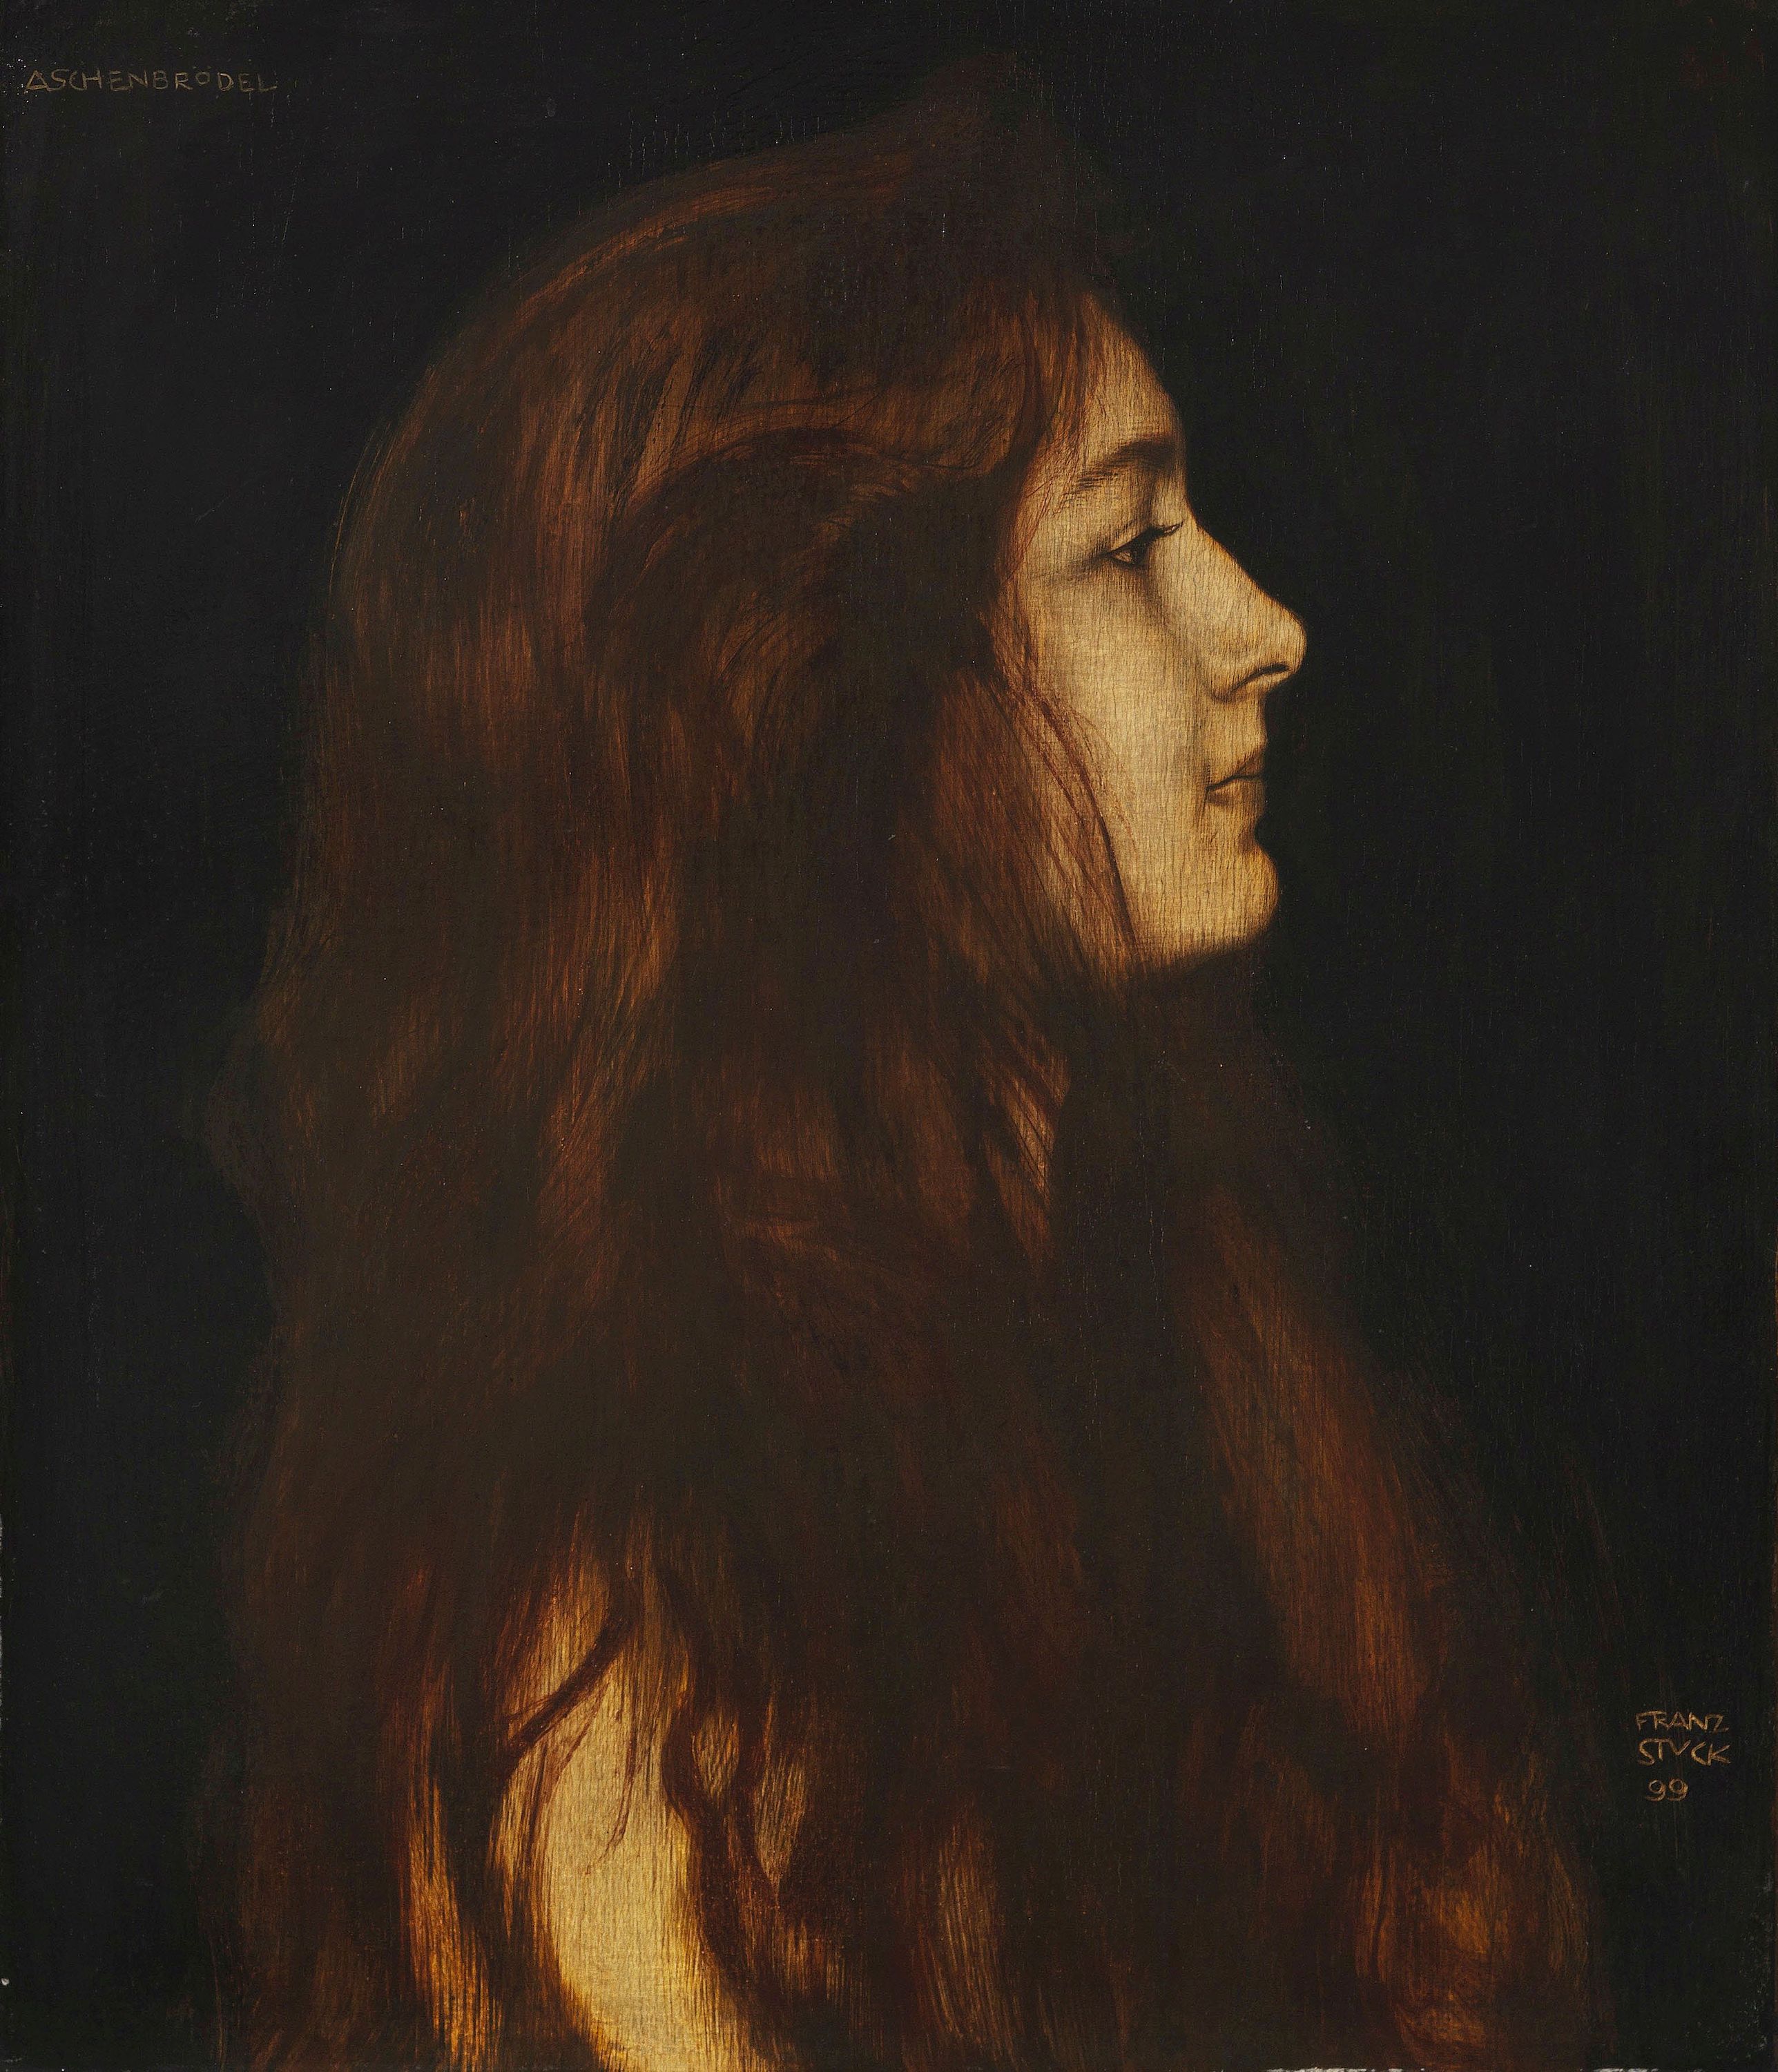 灰姑娘 by Franz von Stuck - 1899 - 49.1 x 42.3 cm 